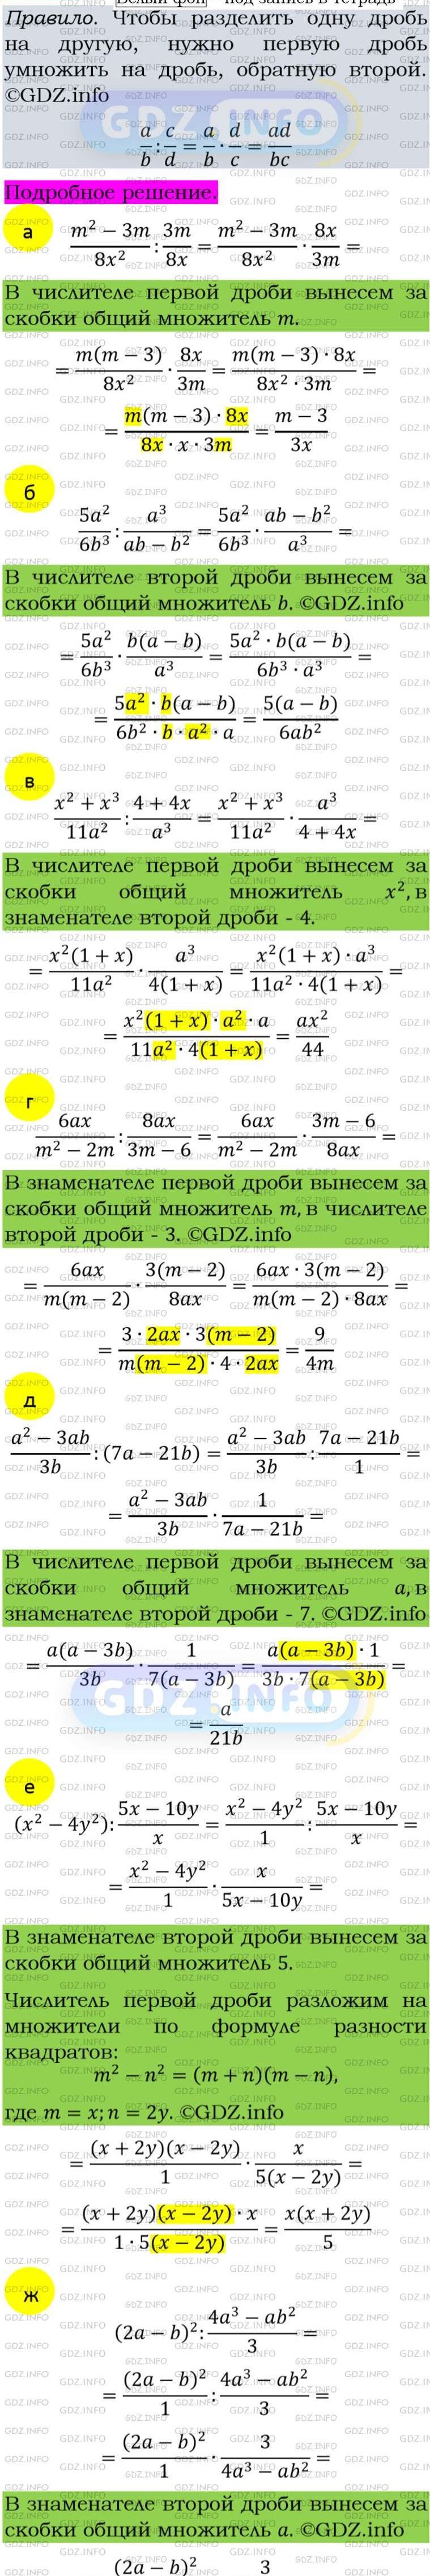 Фото подробного решения: Номер задания №140 из ГДЗ по Алгебре 8 класс: Макарычев Ю.Н.